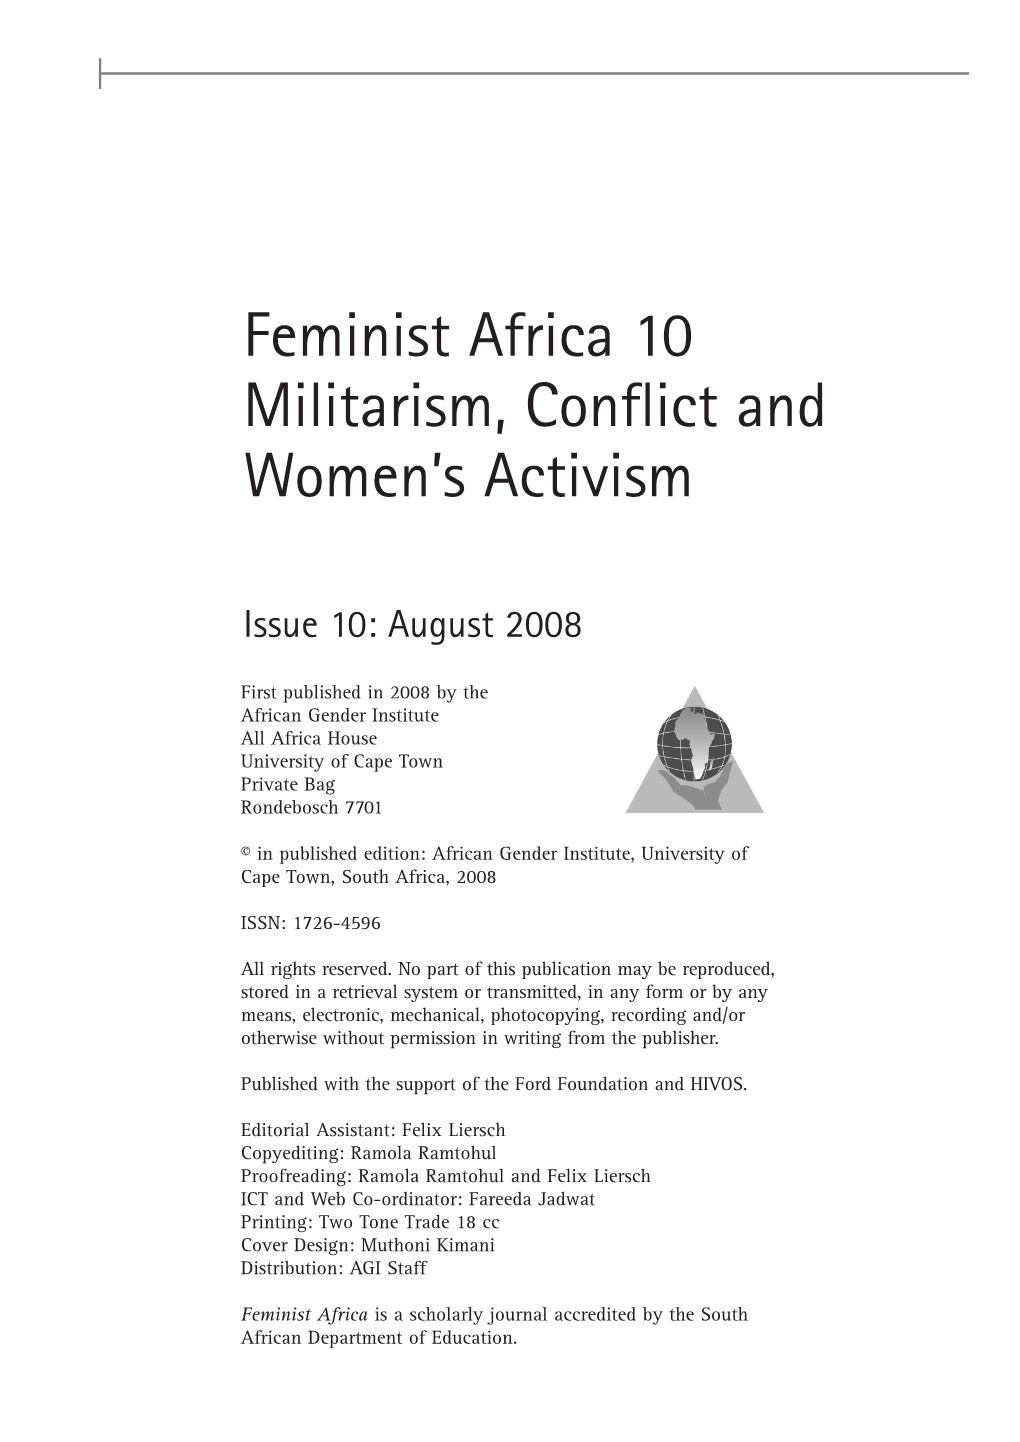 Feminist Africa 10 Militarism, Conflict and Women's Activism